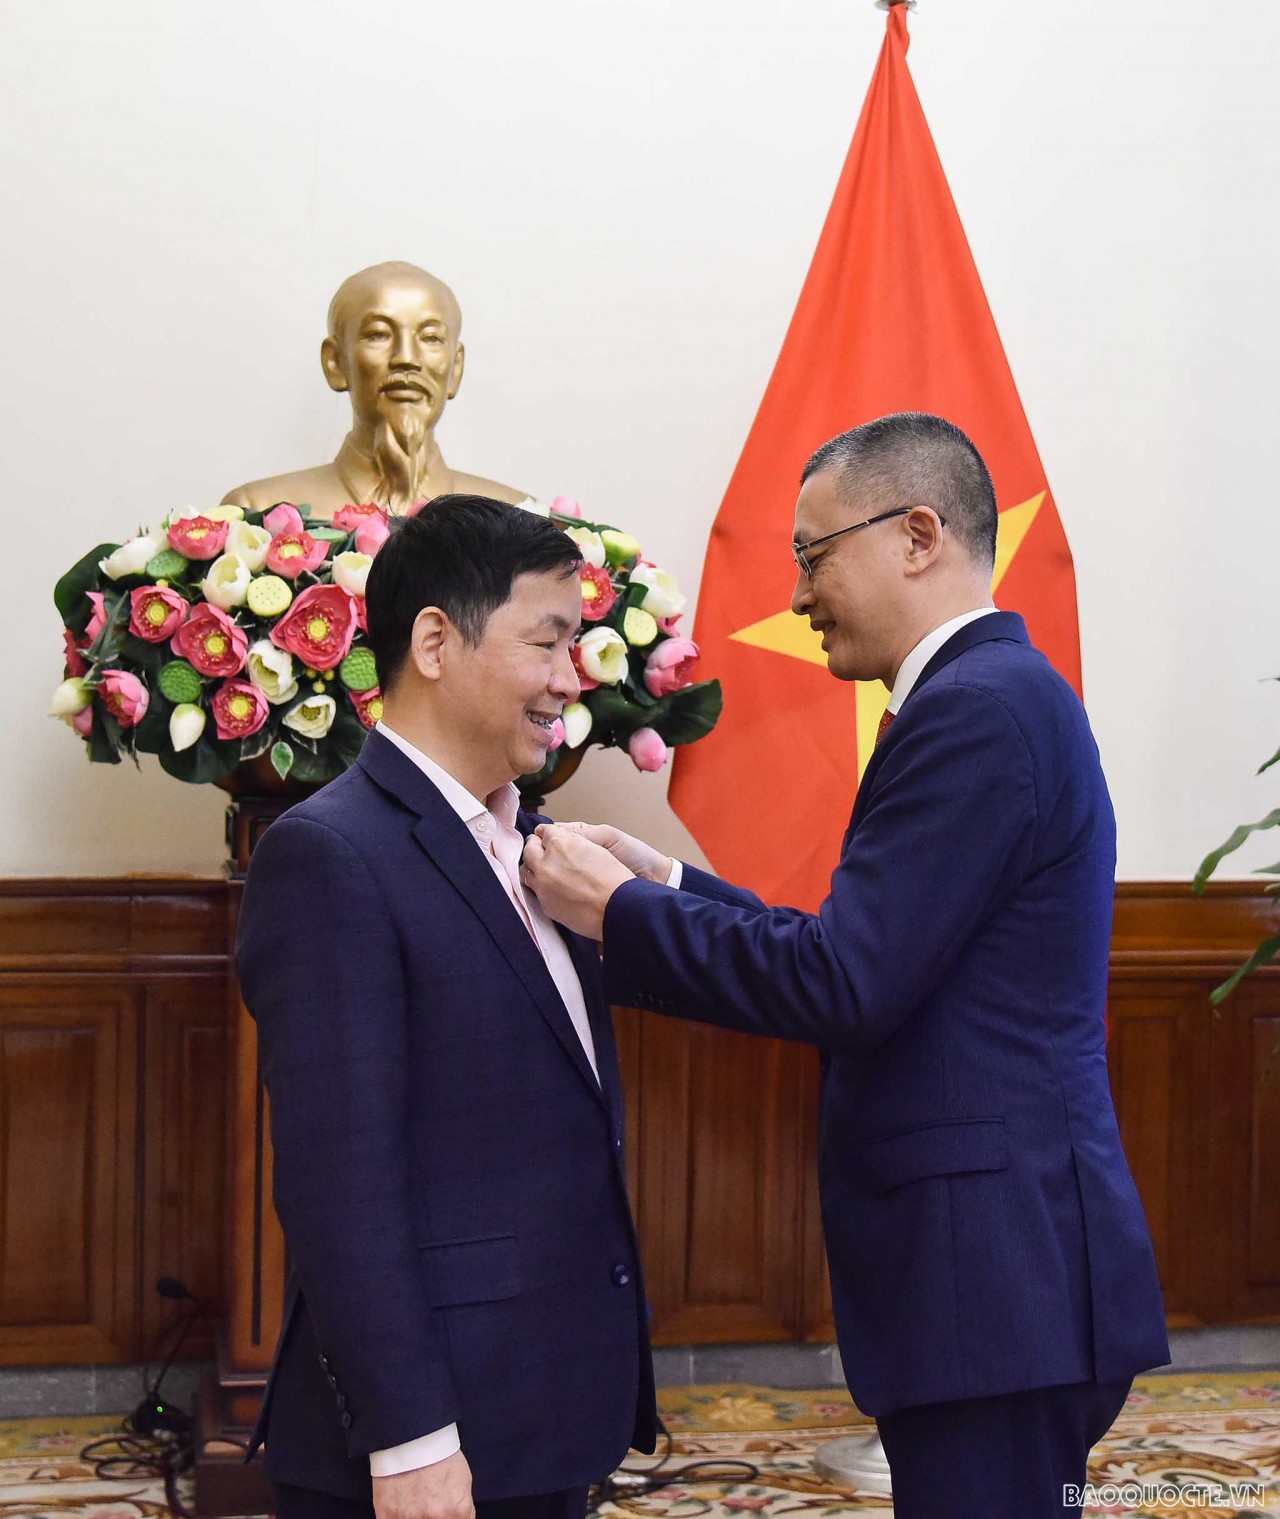 Thứ trưởng Vũ Quang Minh trao tặng Kỷ niệm chương 'Vì sự nghiệp ngoại giao Việt Nam' cho TS. Vũ Thành Tự Anh